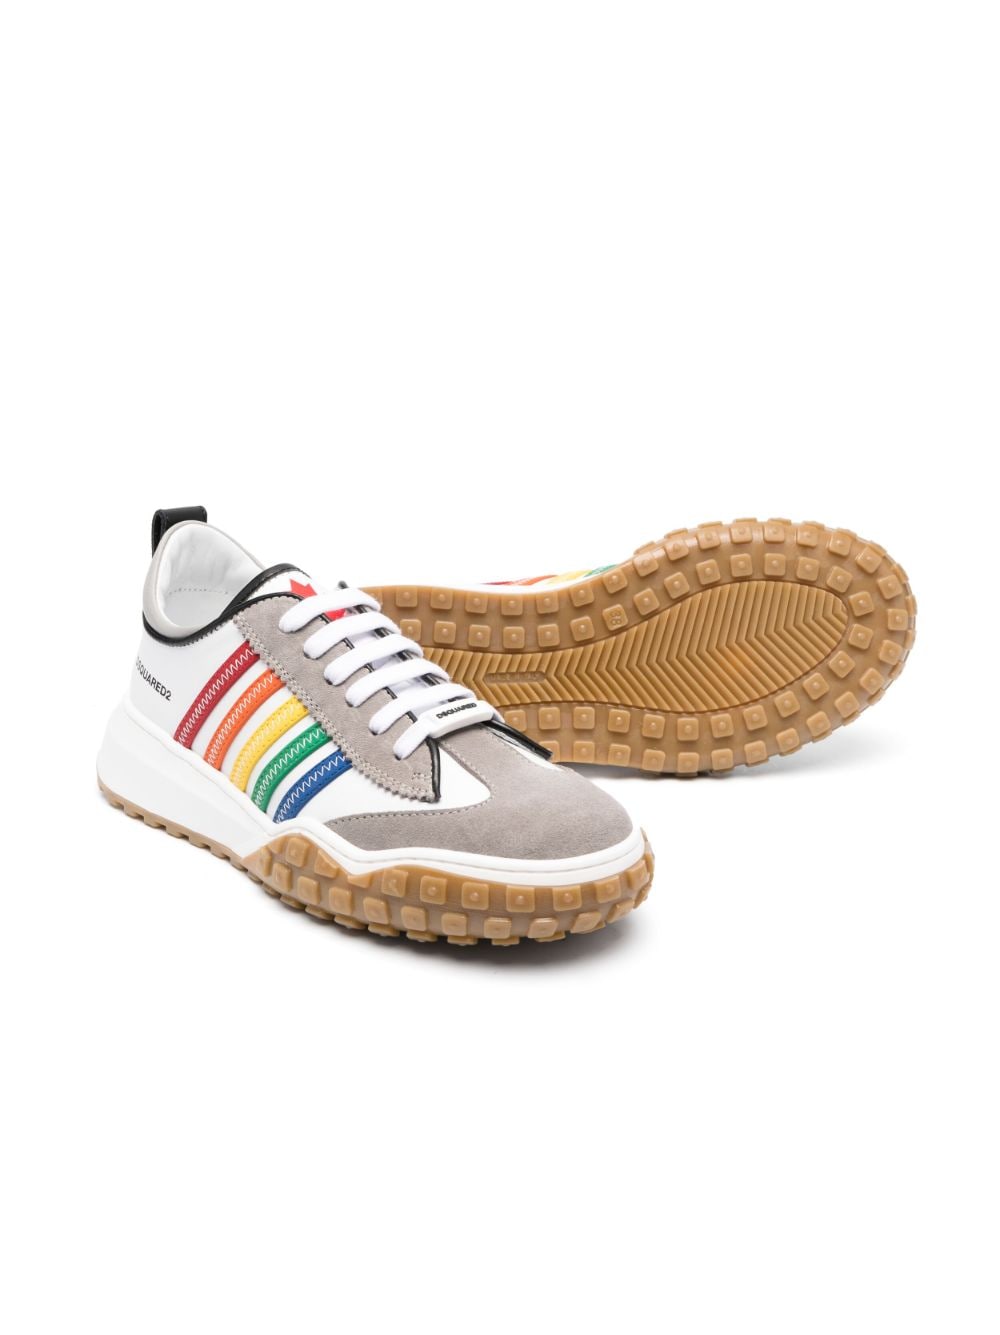 Sneakers bianche e multicolore per bambino in pelle